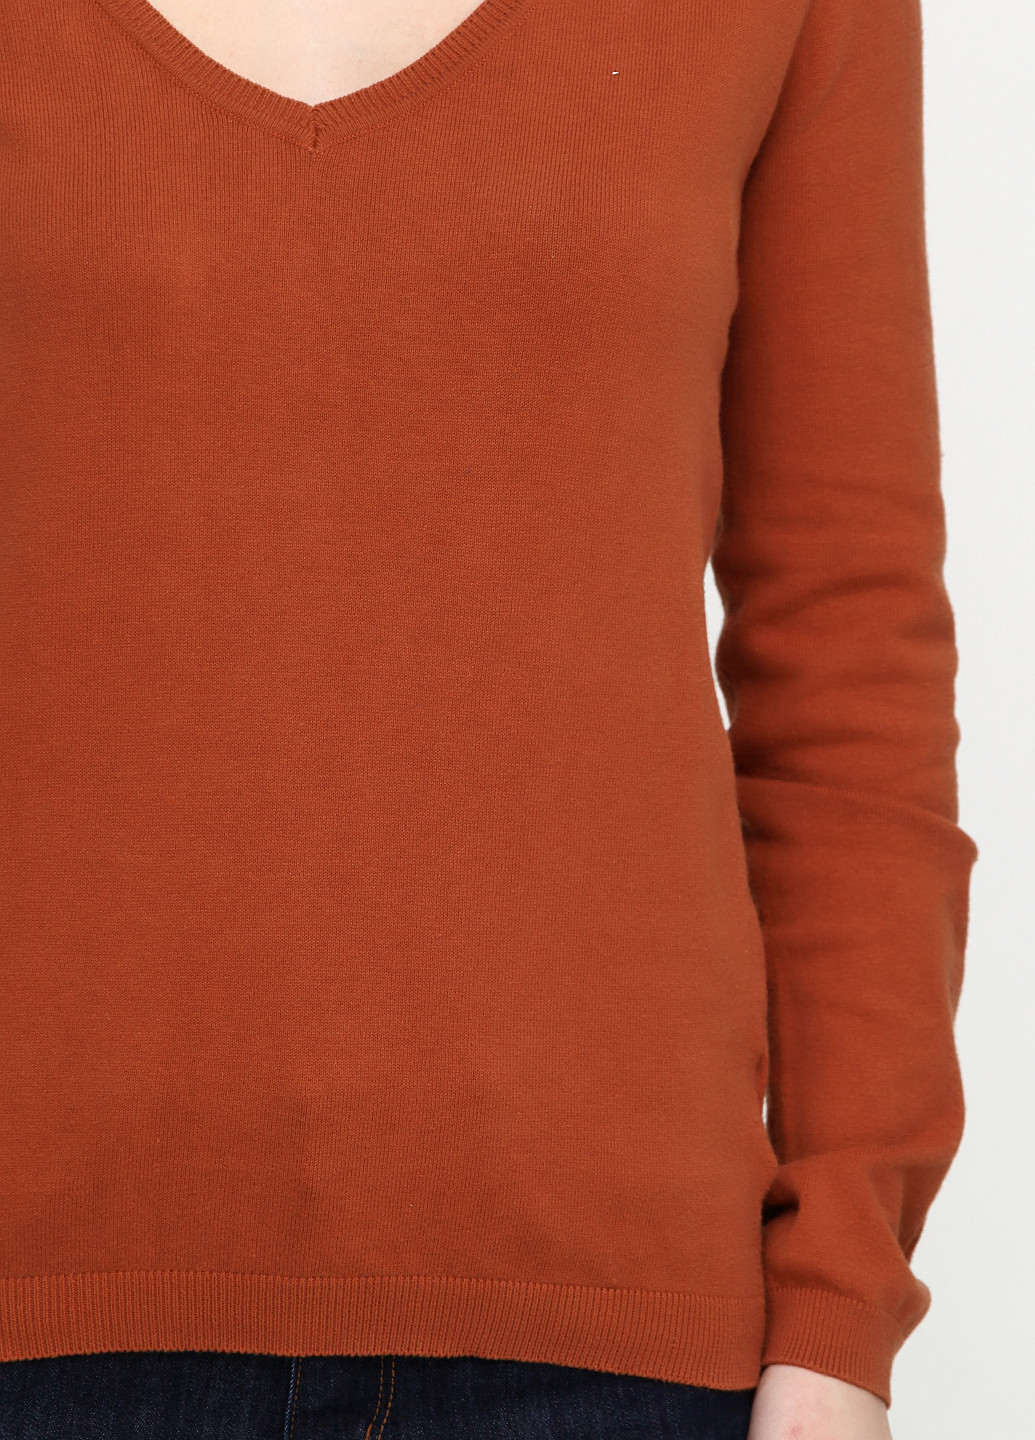 Светло-коричневый демисезонный пуловер пуловер Colours